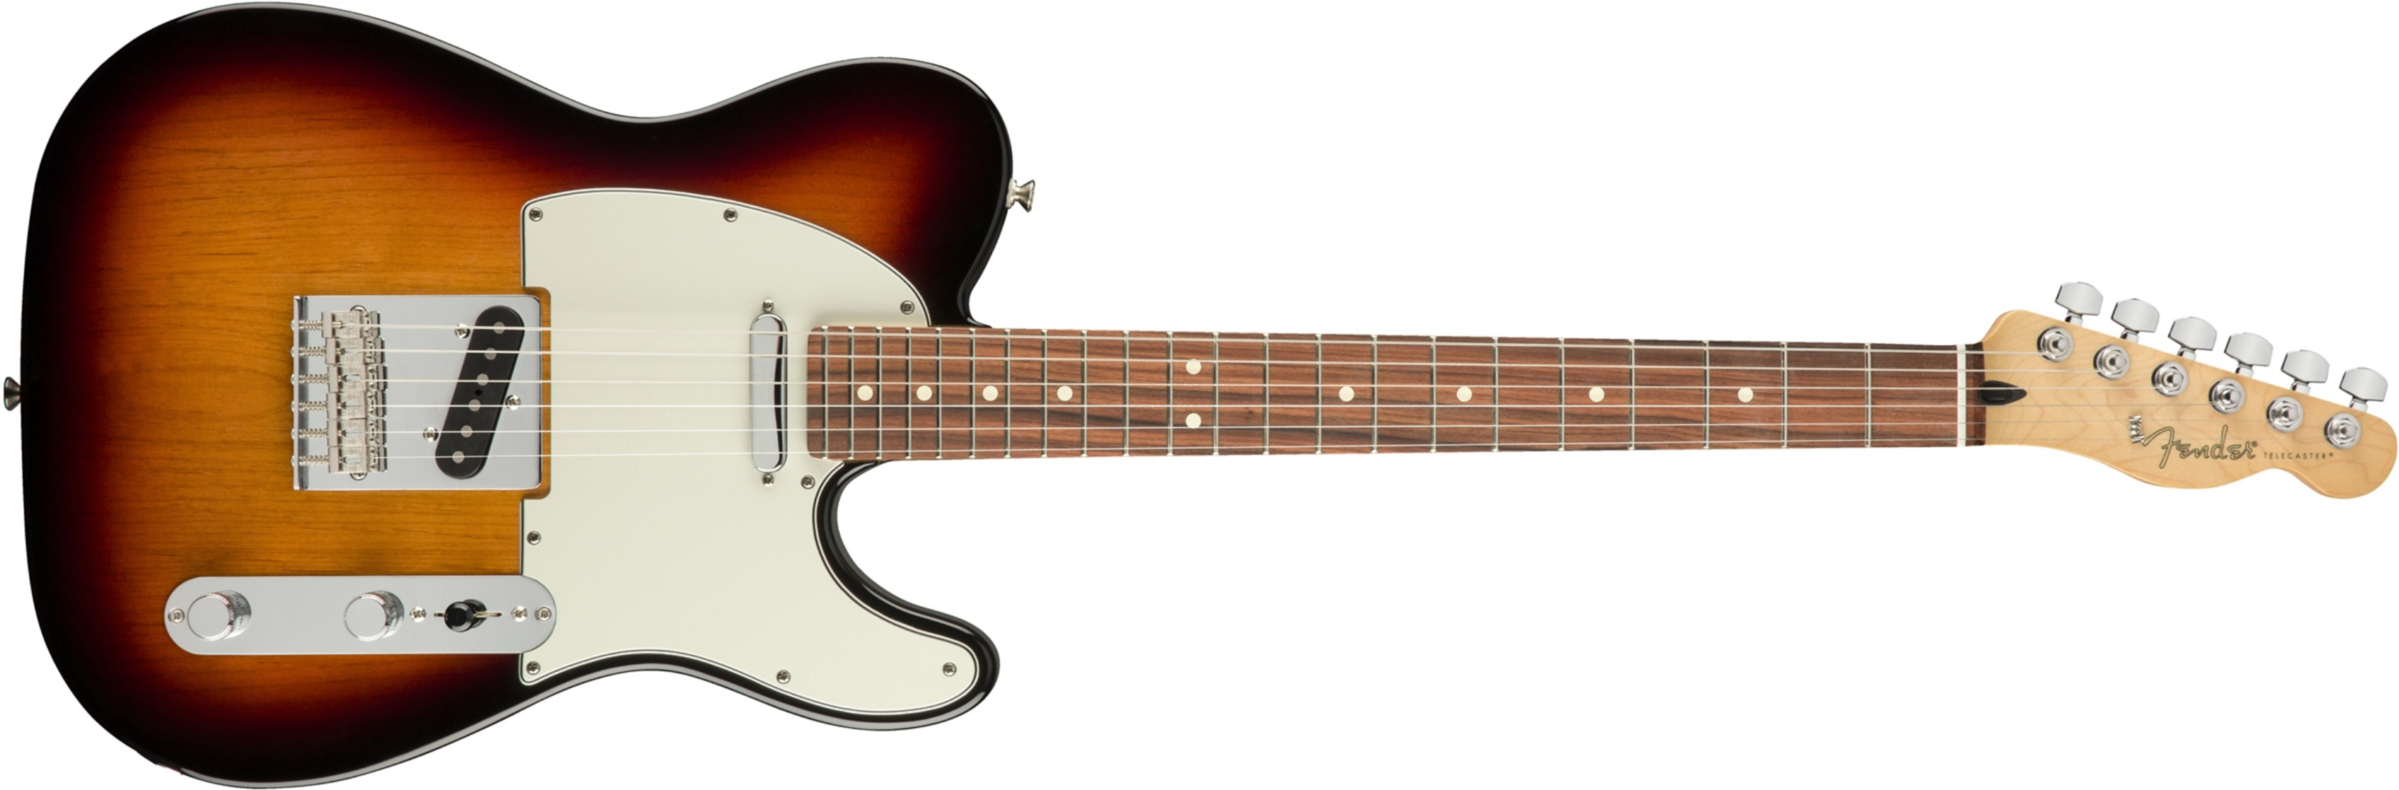 Fender Tele Player Mex Ss Pf - 3-color Sunburst - Tel shape electric guitar - Main picture